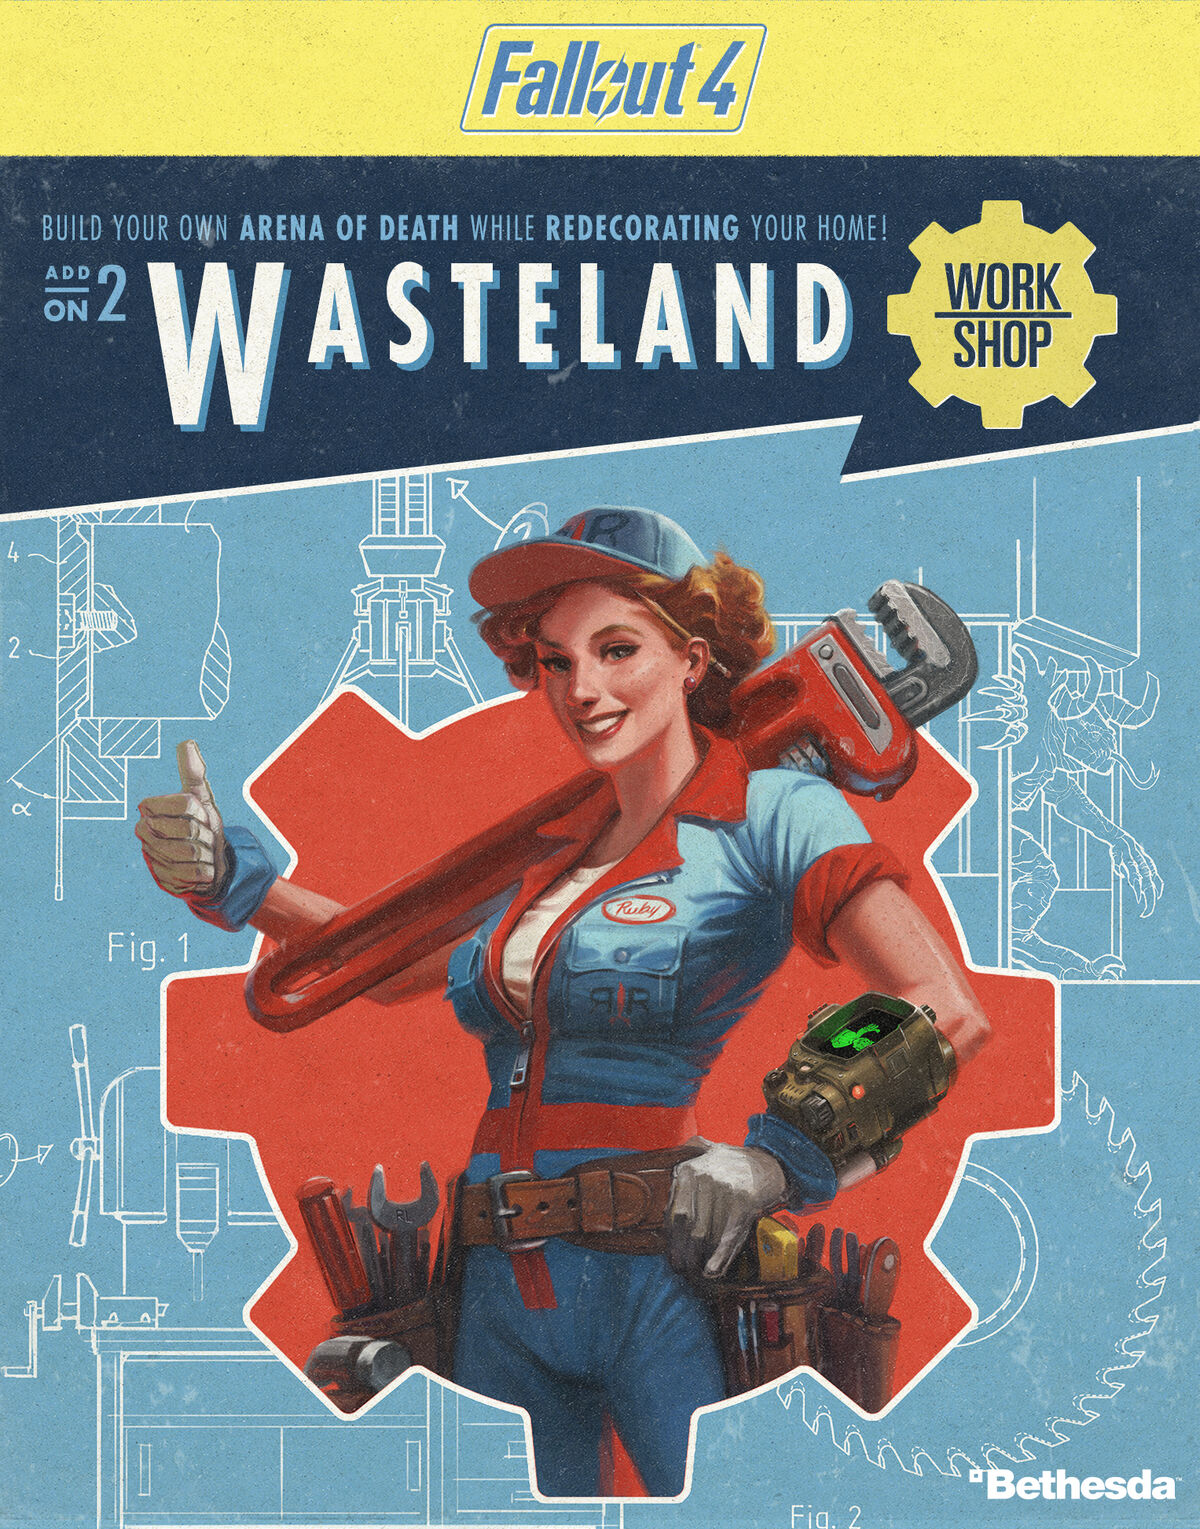 Fallout 4 wasteland описание фото 110